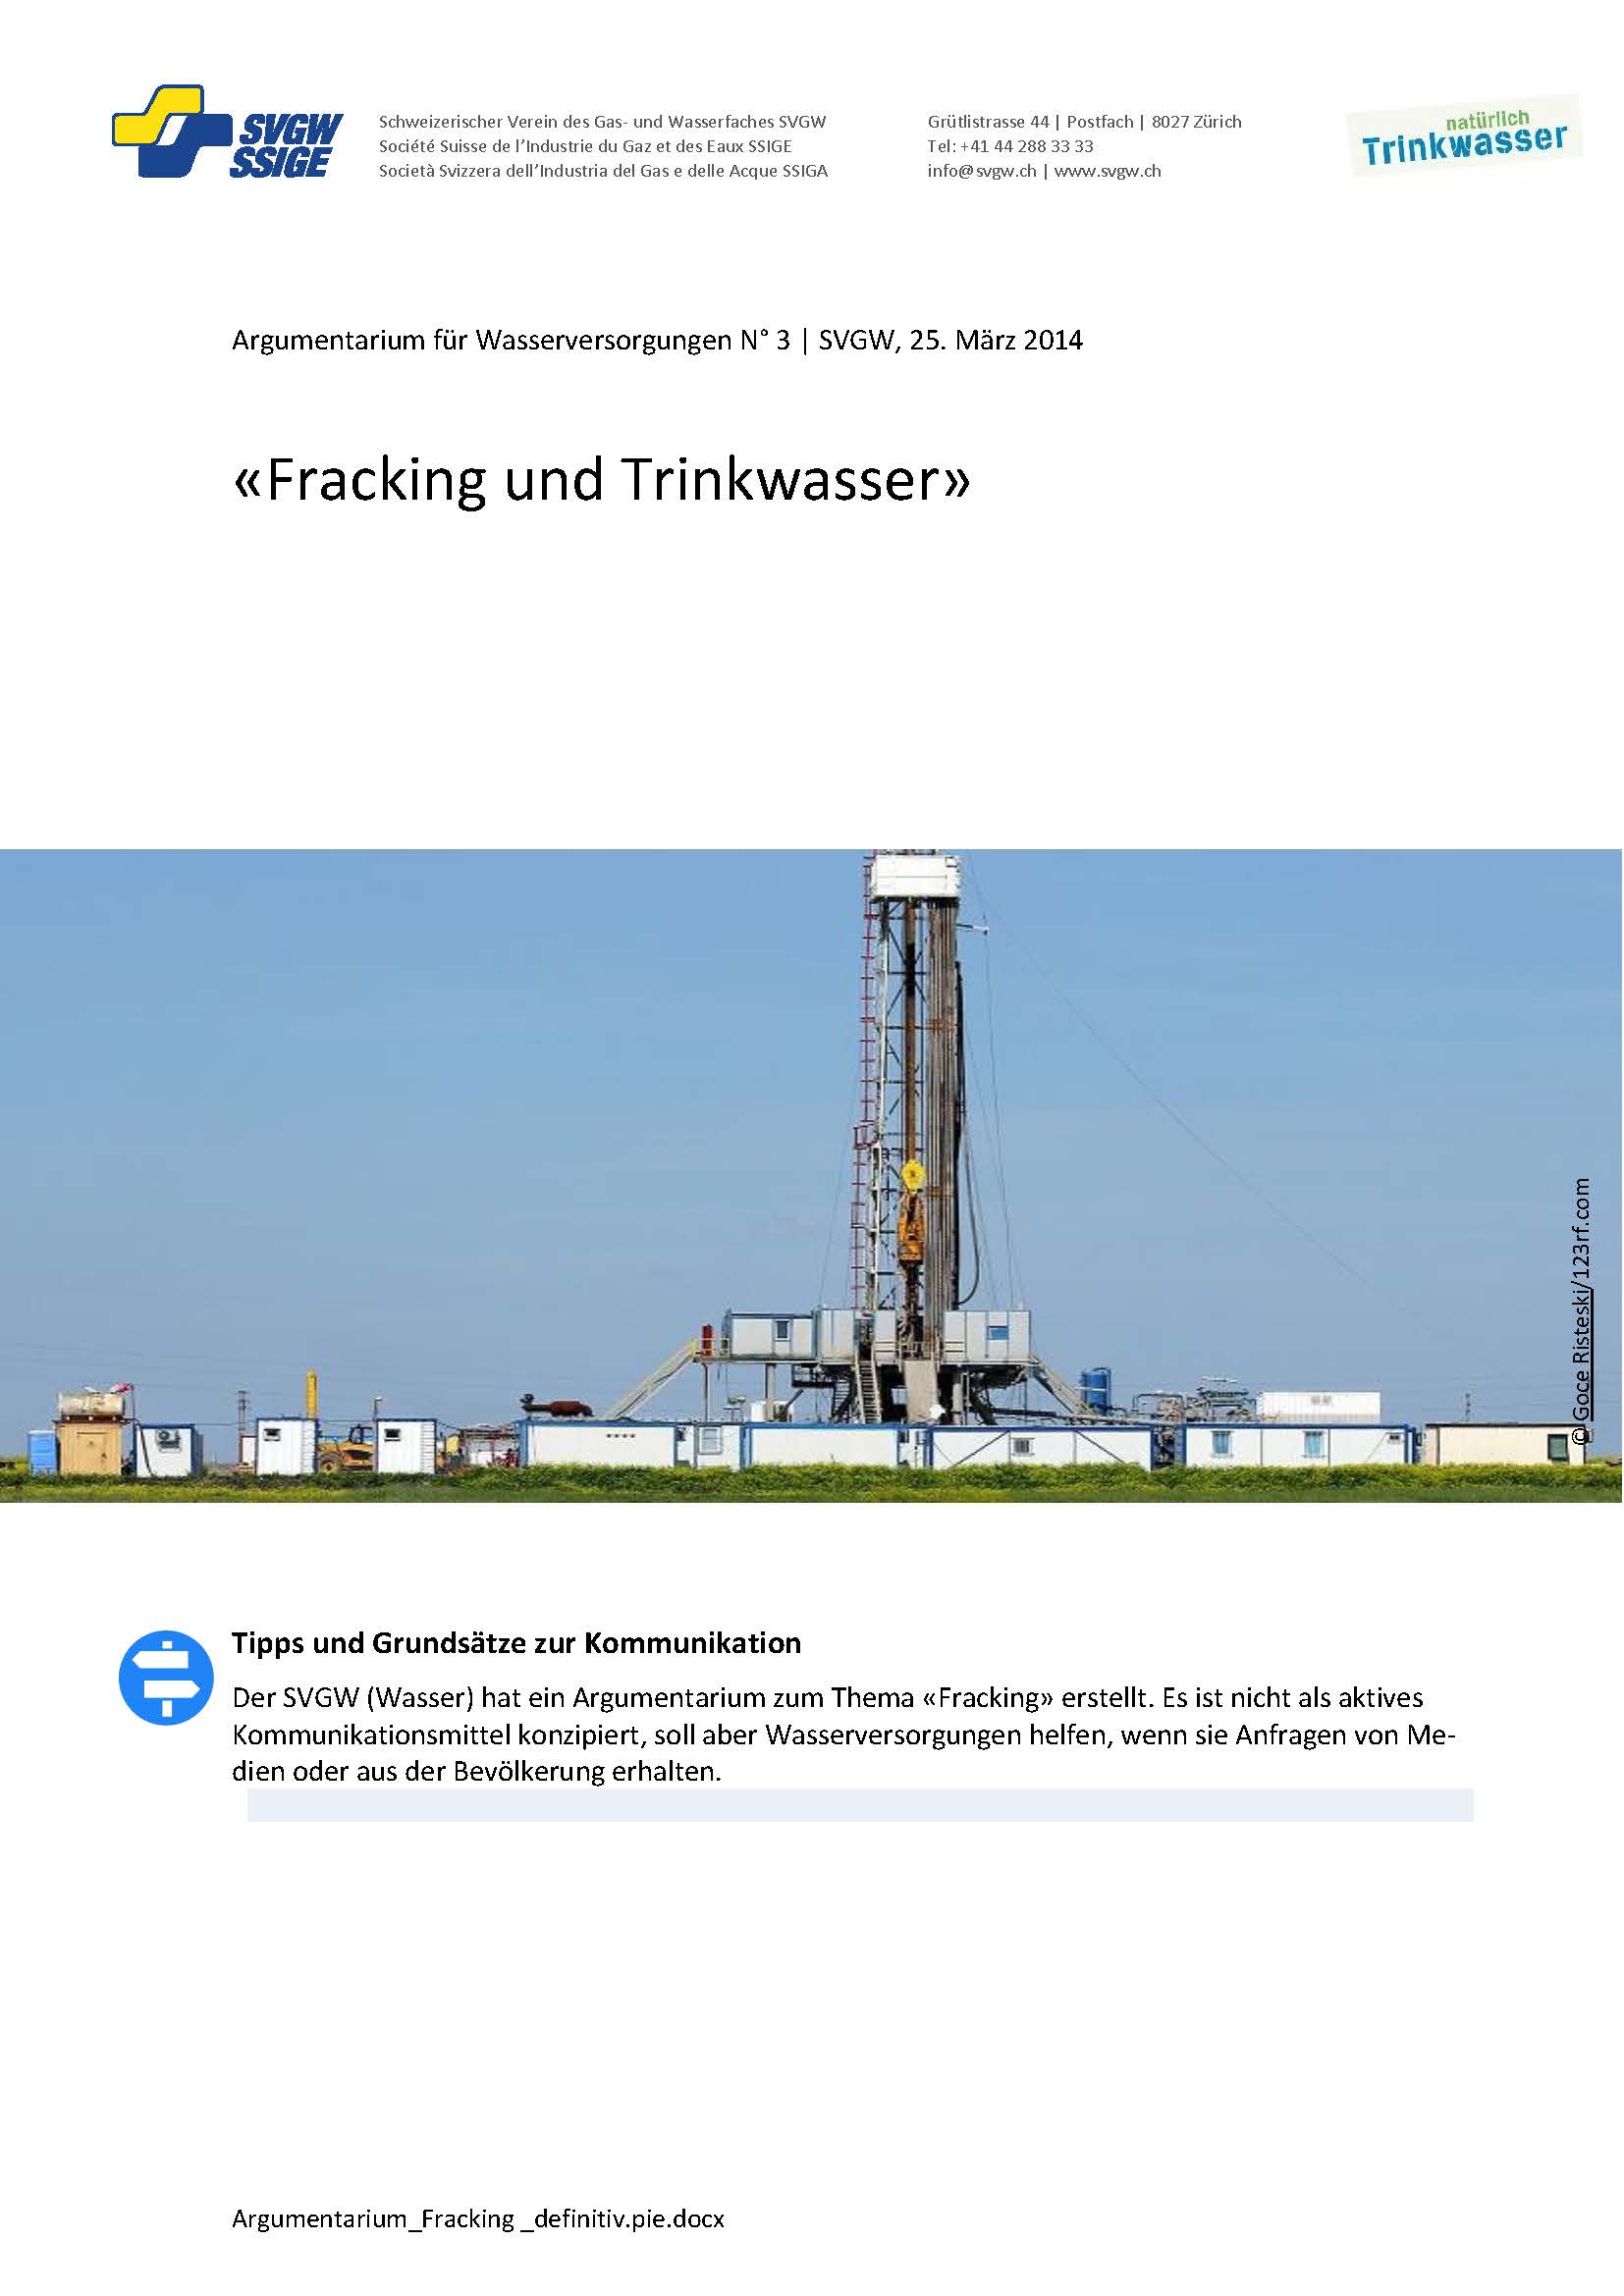 Argumentarium: «Fracking und Trinkwasser»